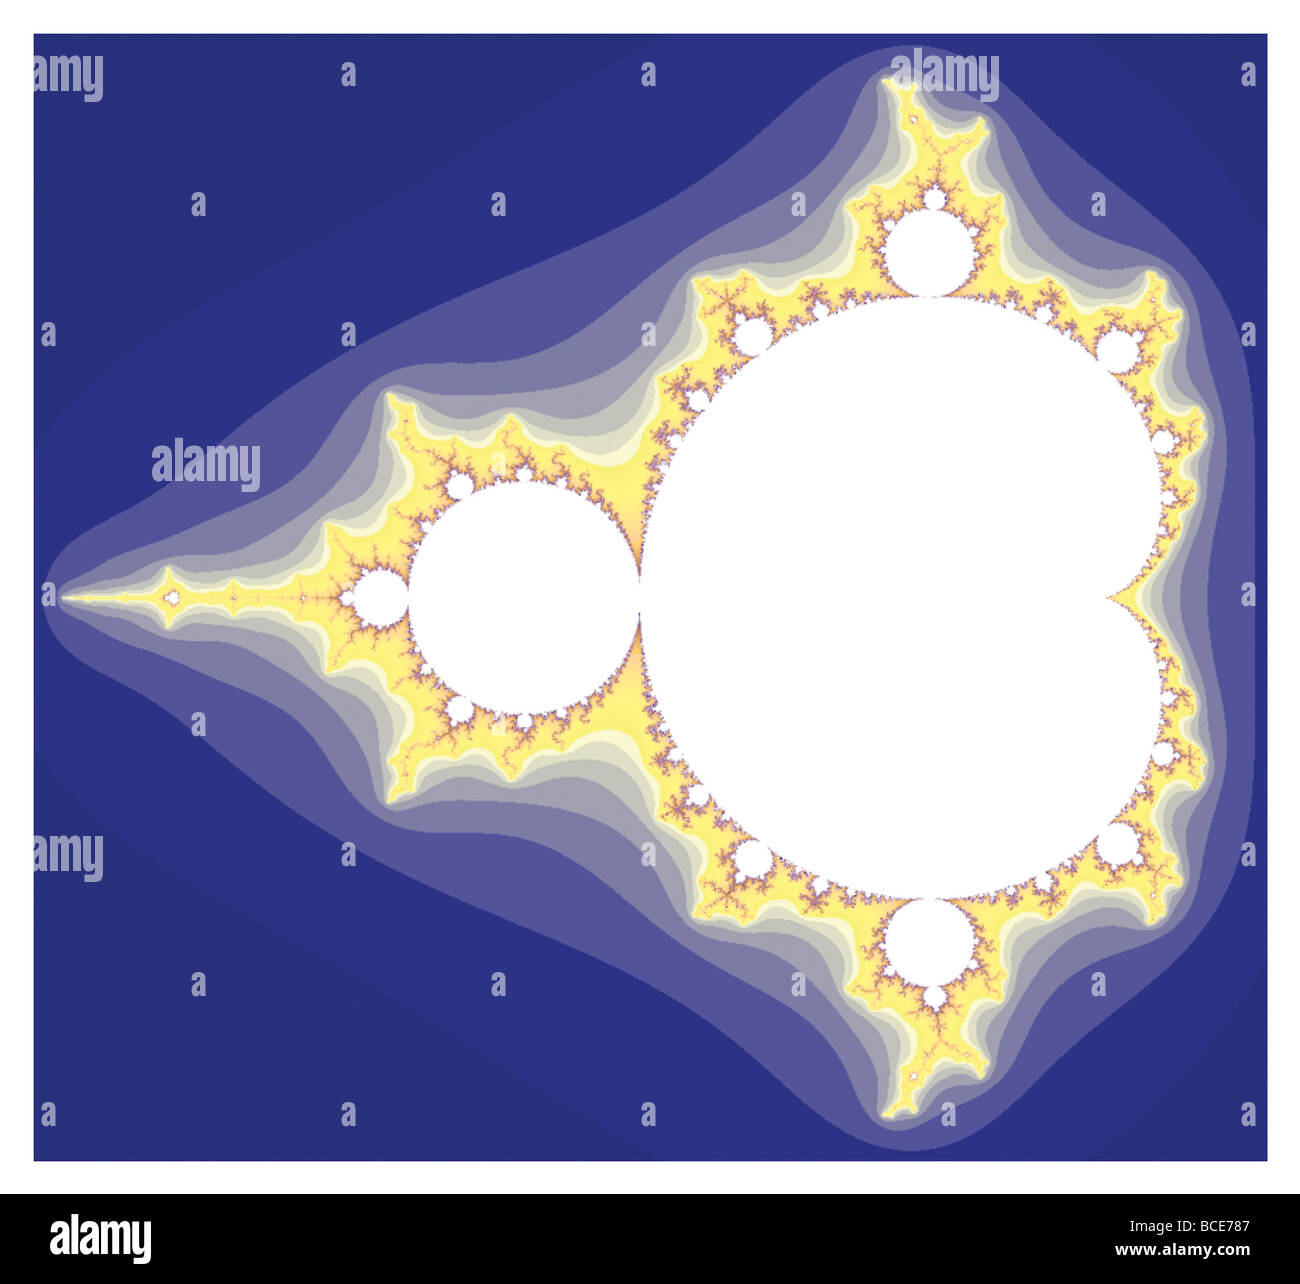 Nel set di Mandelbrot, punti ancora finite attraverso tutte le iterazioni sono bianchi. Valori divergenti per infinity sono mostrati più scuro. Foto Stock